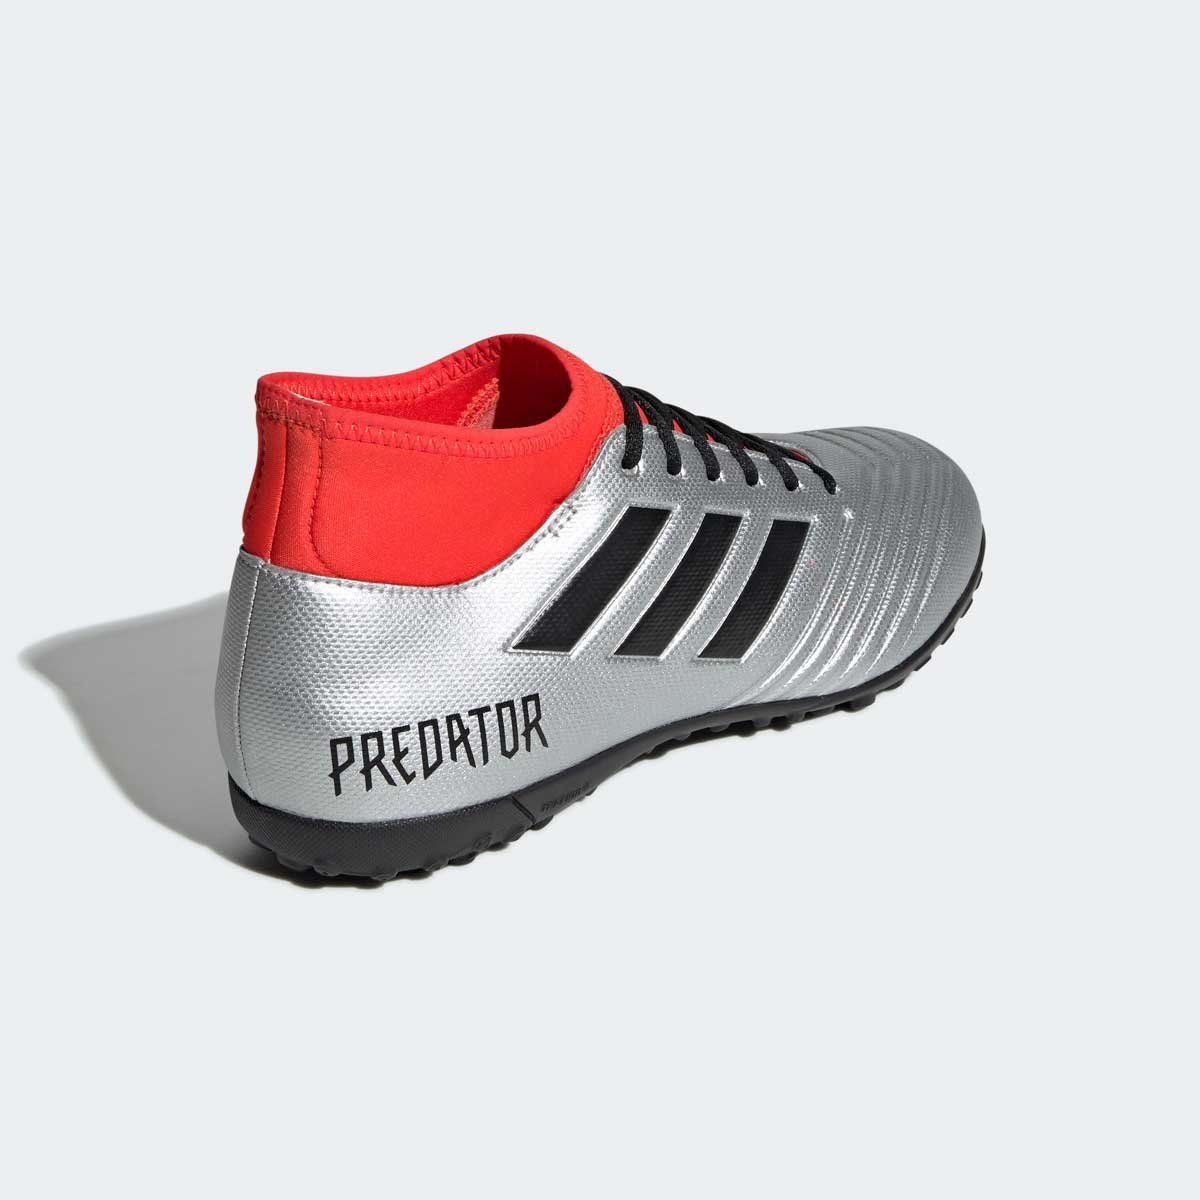 Calzado Soccer Predator 19.4 S Tf  Hirere Adidas - Caballero